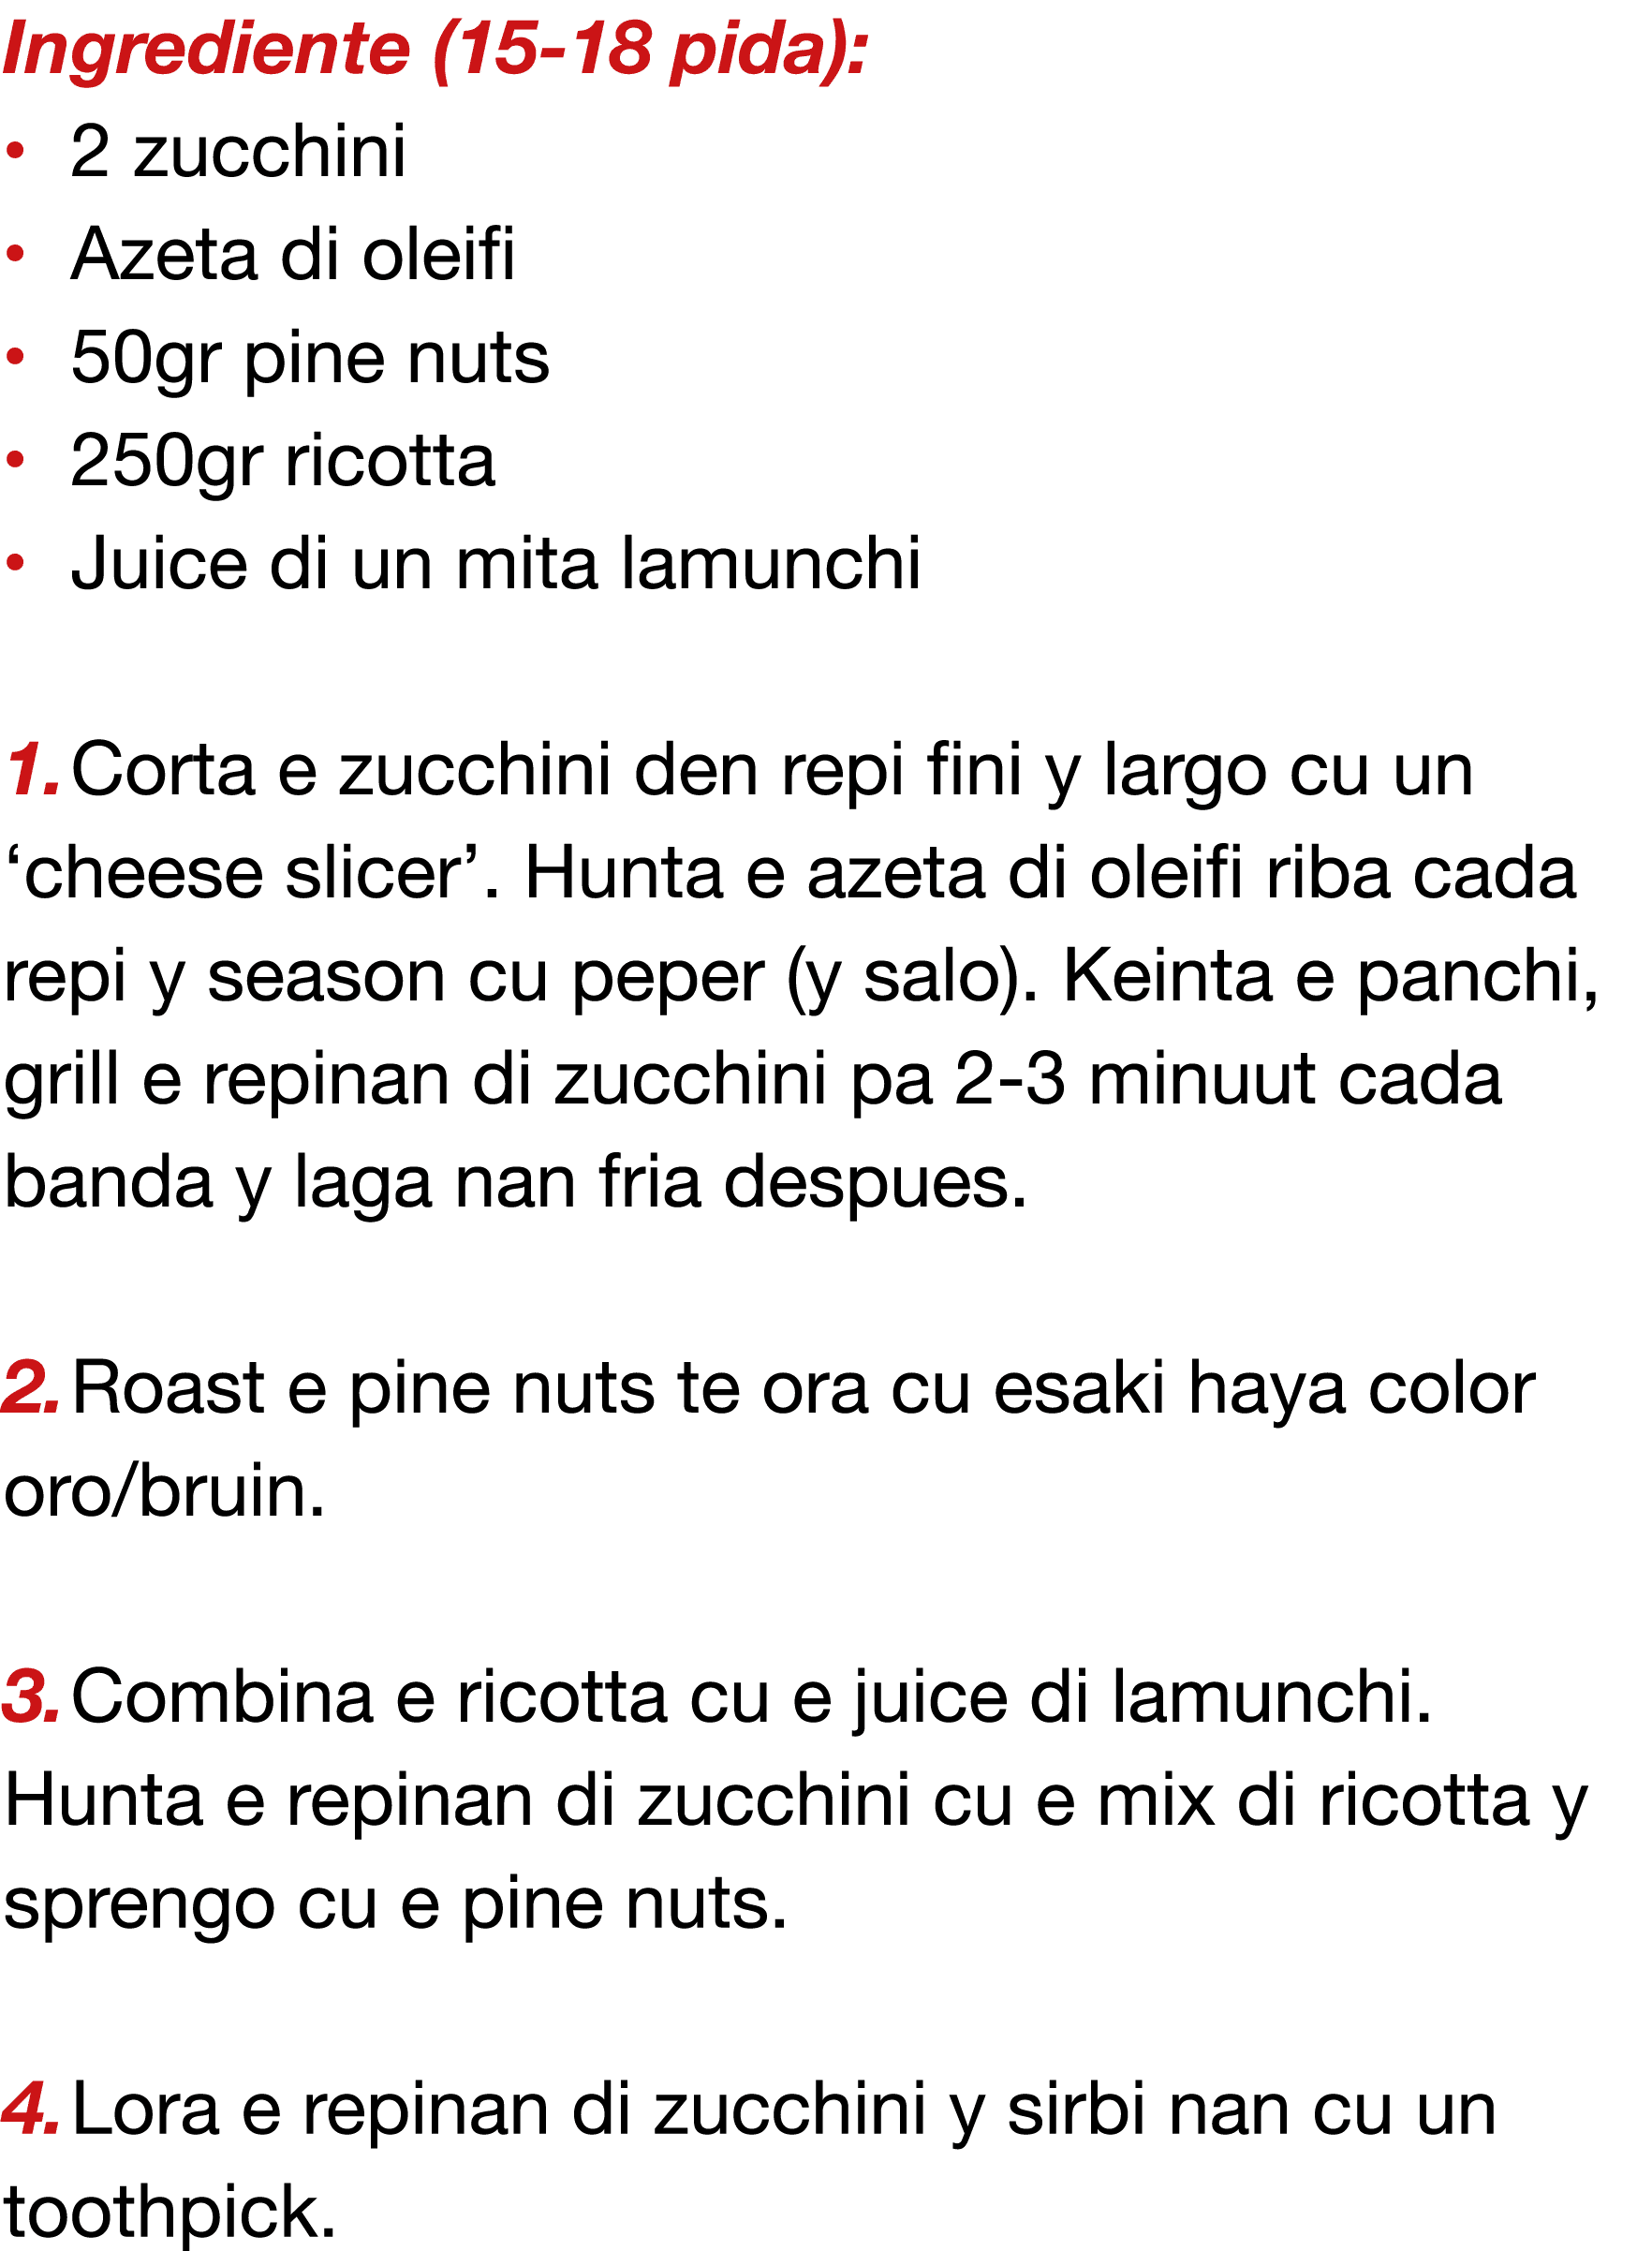 Ingrediente (15-18 pida):   2 zucchini   Azeta di oleifi   50gr pine nuts   250gr ricotta   Juice di un mita lamunchi   